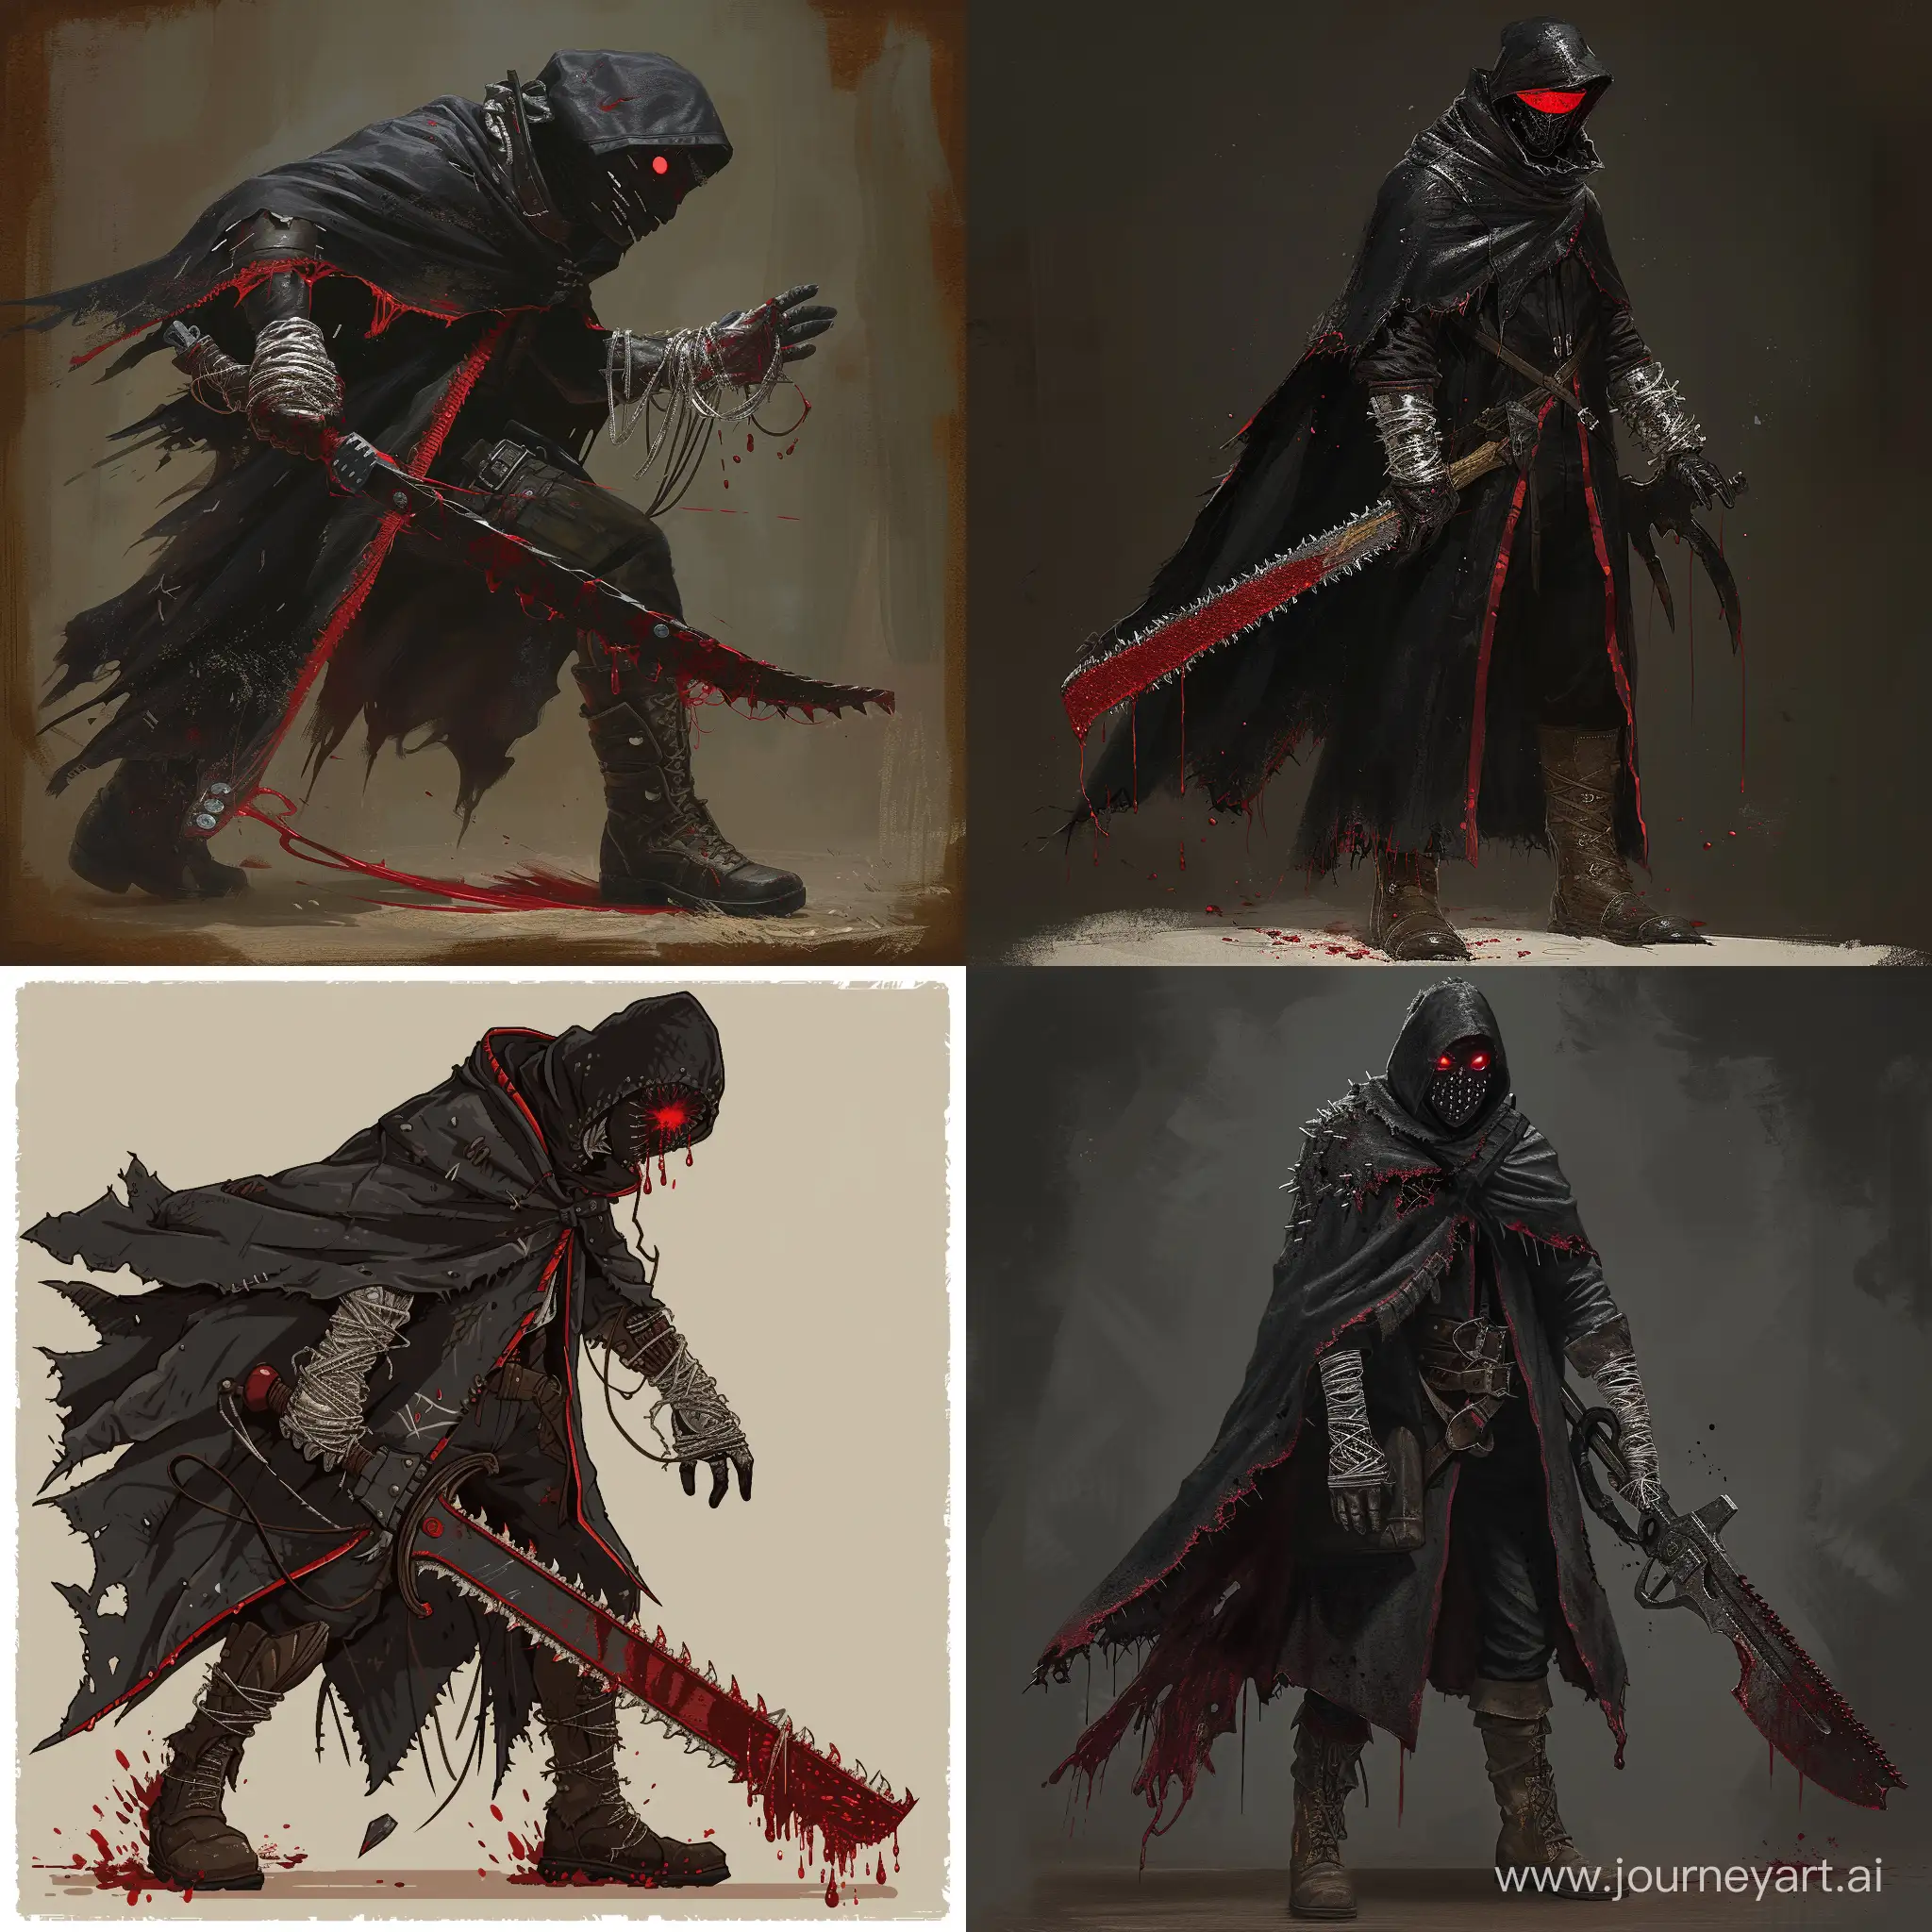 Sinister-BloodborneInspired-Warrior-in-1970s-Dark-Fantasy-Pixel-Art